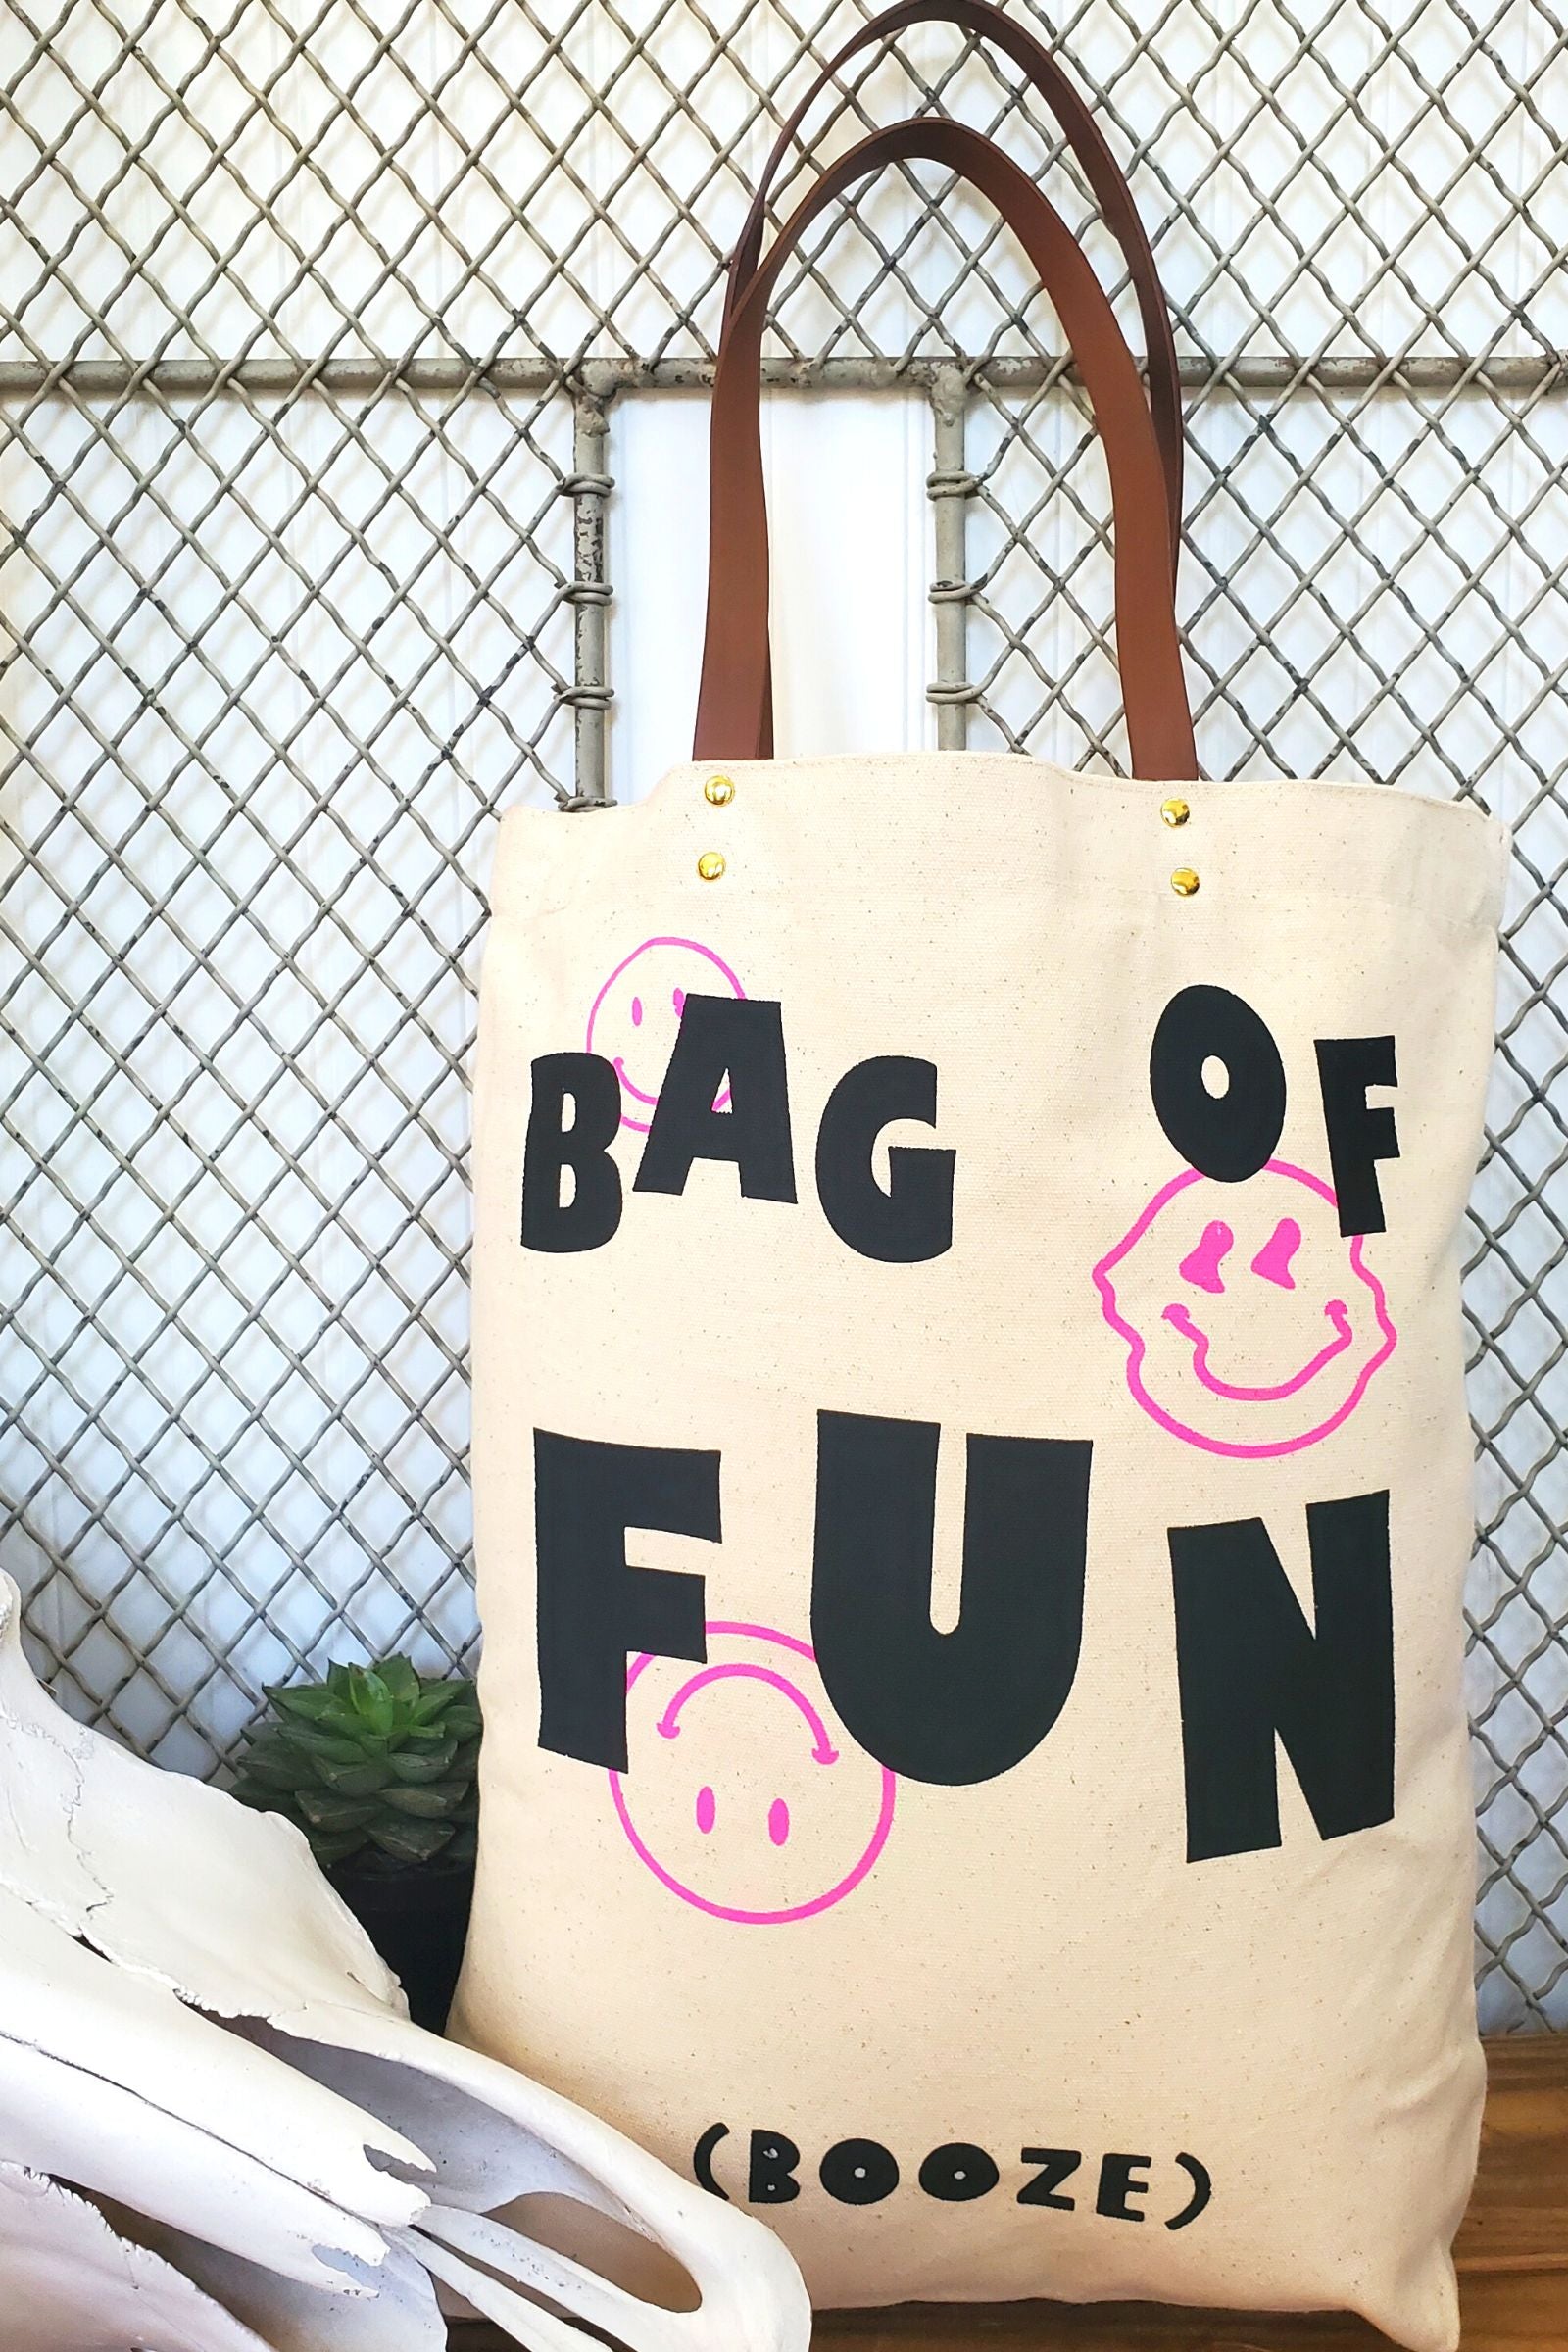 Bag of Fun (Booze) Tote Bag